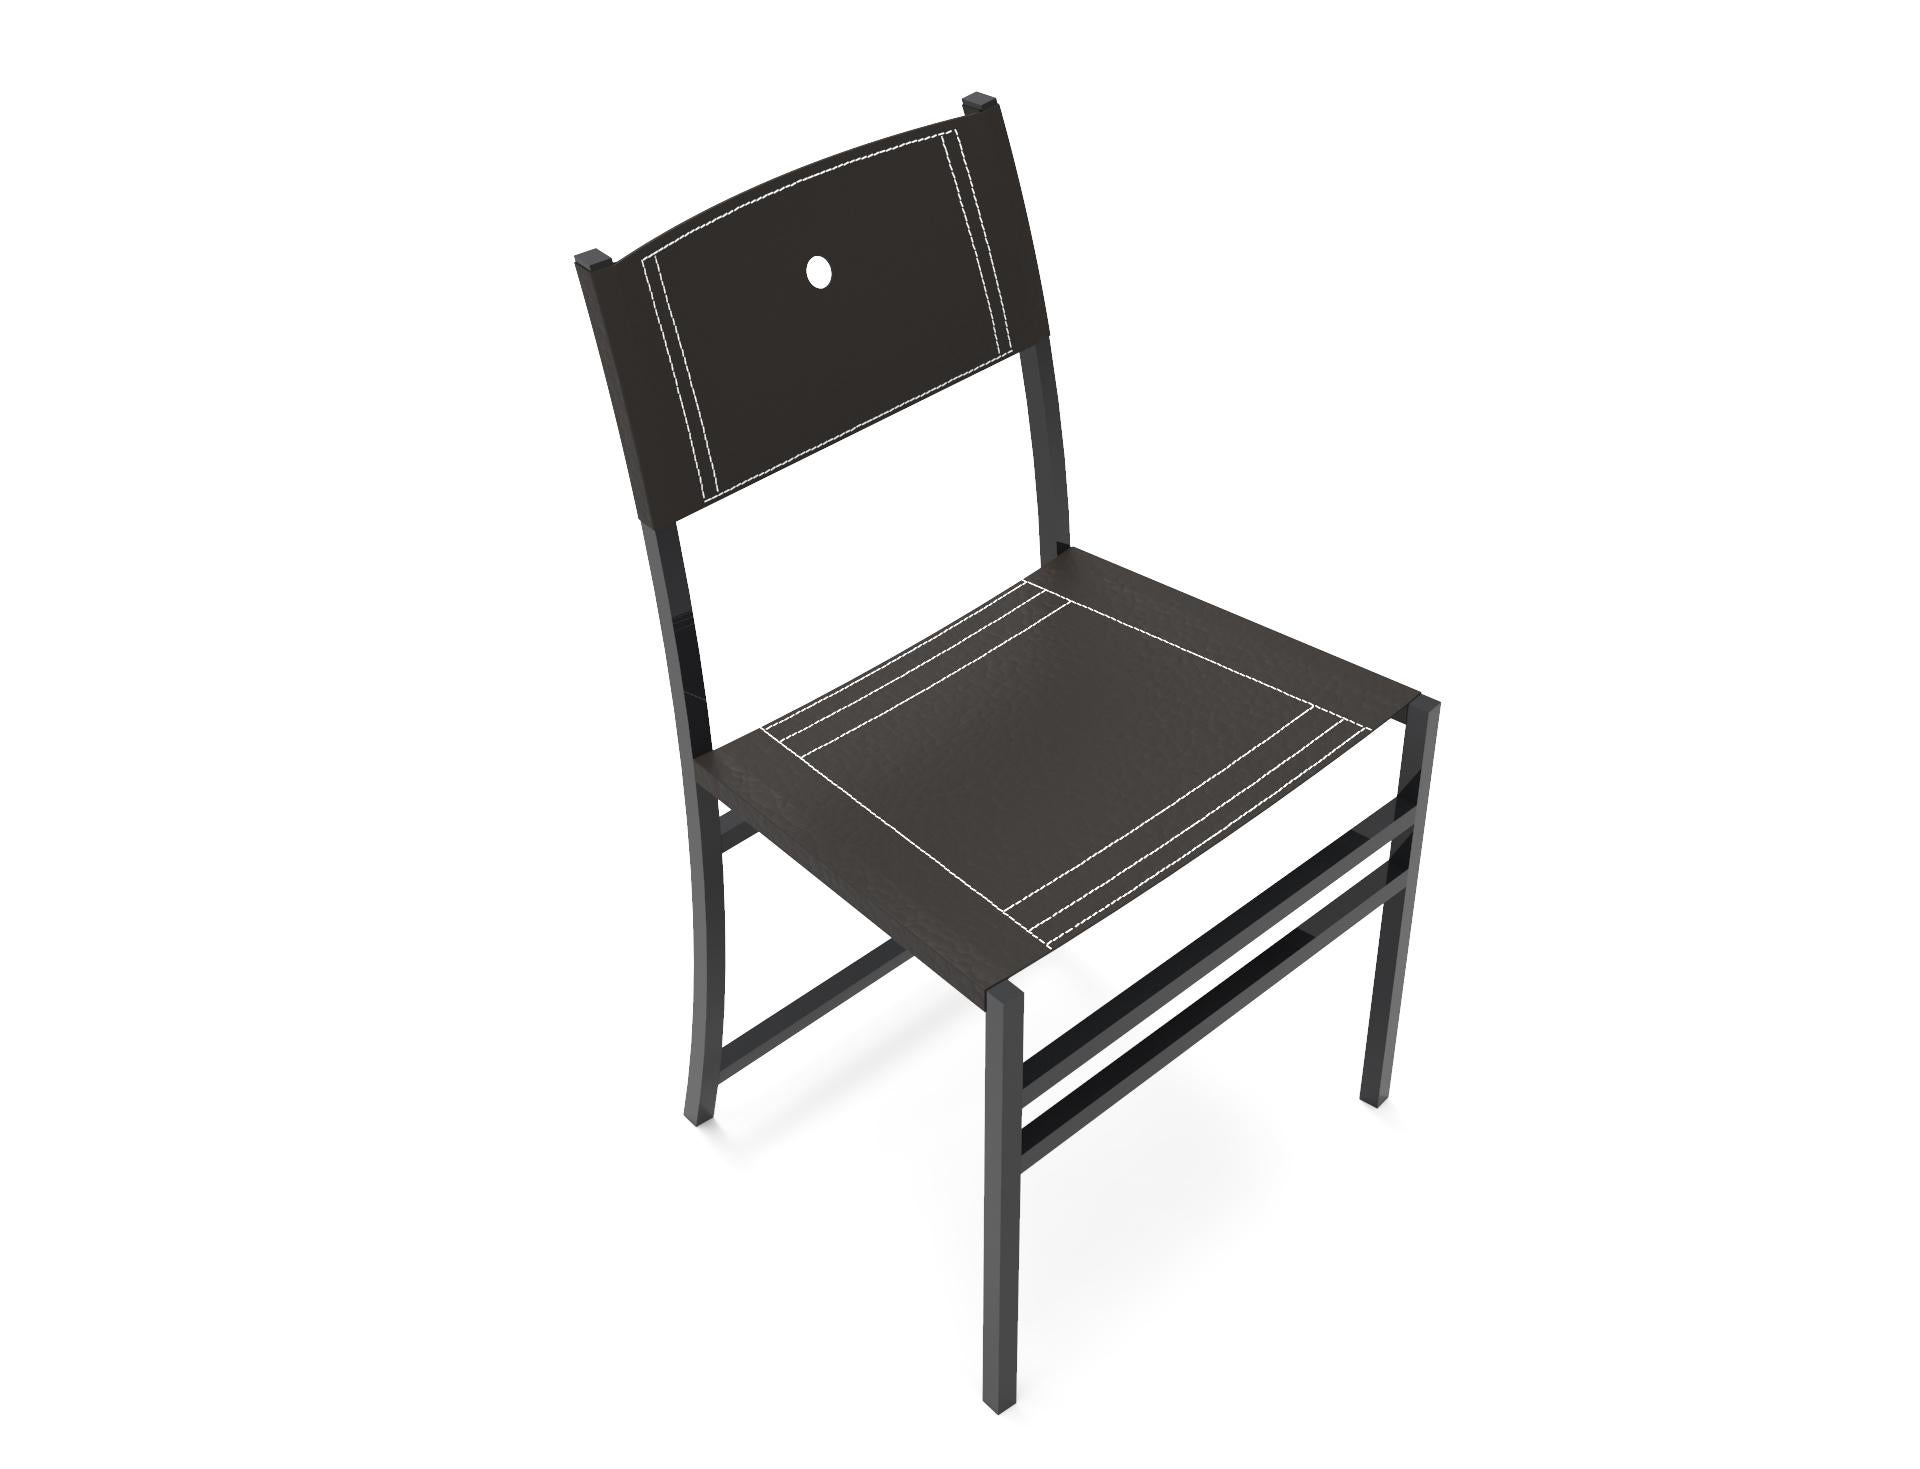 Der Anfang der 90er Jahre von CASA&JARDÍN entworfene Infantes-Stuhl ist eine zeitgenössische Adaption der Habsburger Möbel. Anstelle des Holzes, das die Monarchen einst verwendeten, besteht die Struktur des Infantes Chair aus einem hohlen,